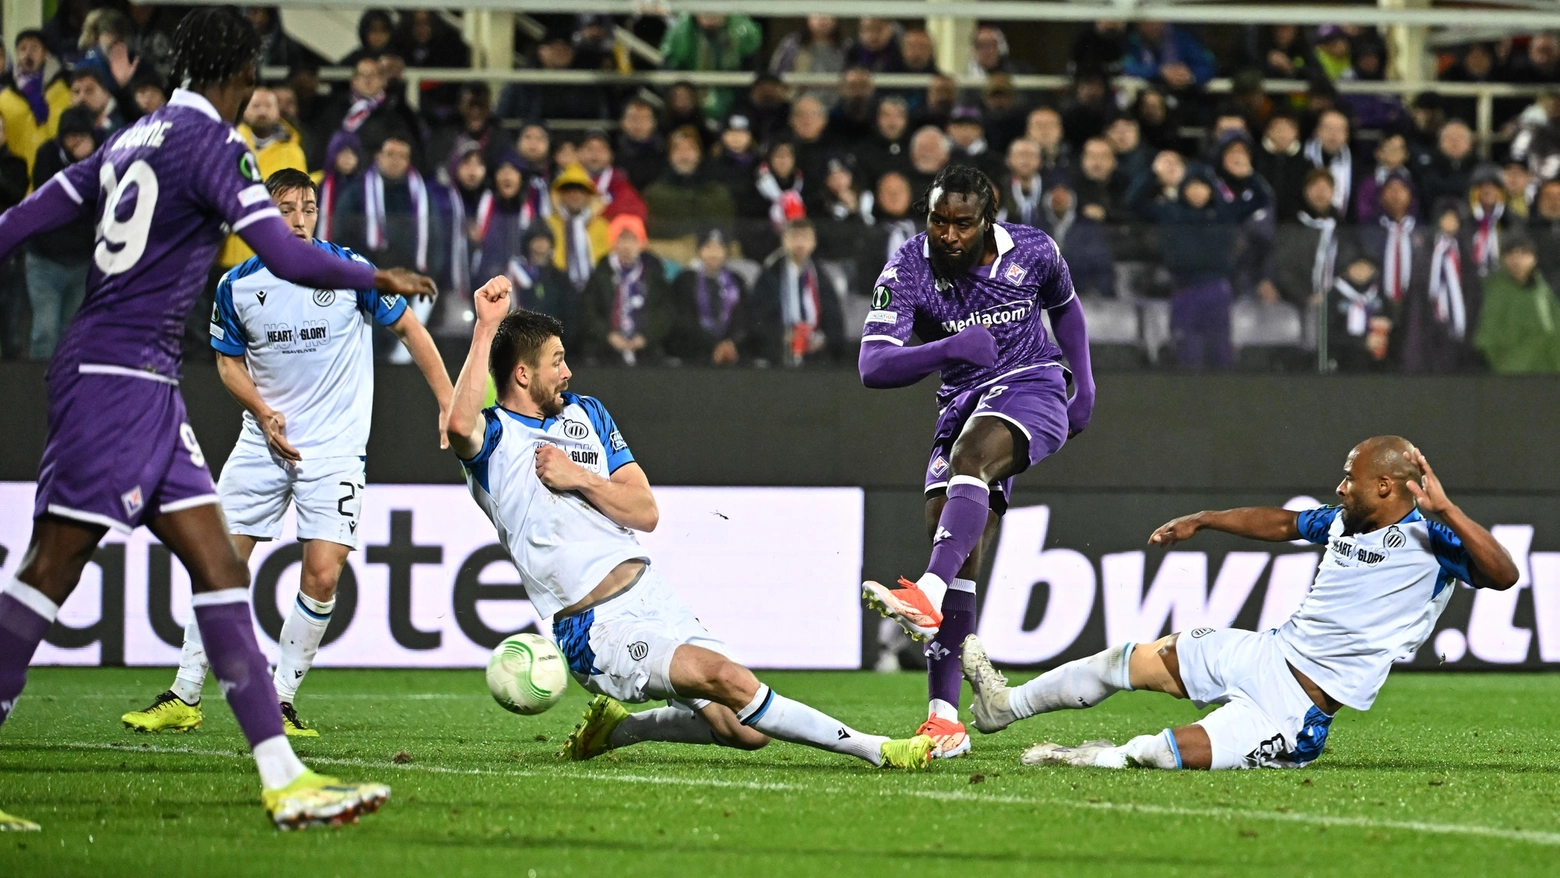 La squadra di Vincenzo Italiano riparte dal 3-2 dell’andata, mentre i greci dopo il colpaccio al Villa Park devono difendere due gol di vantaggio.